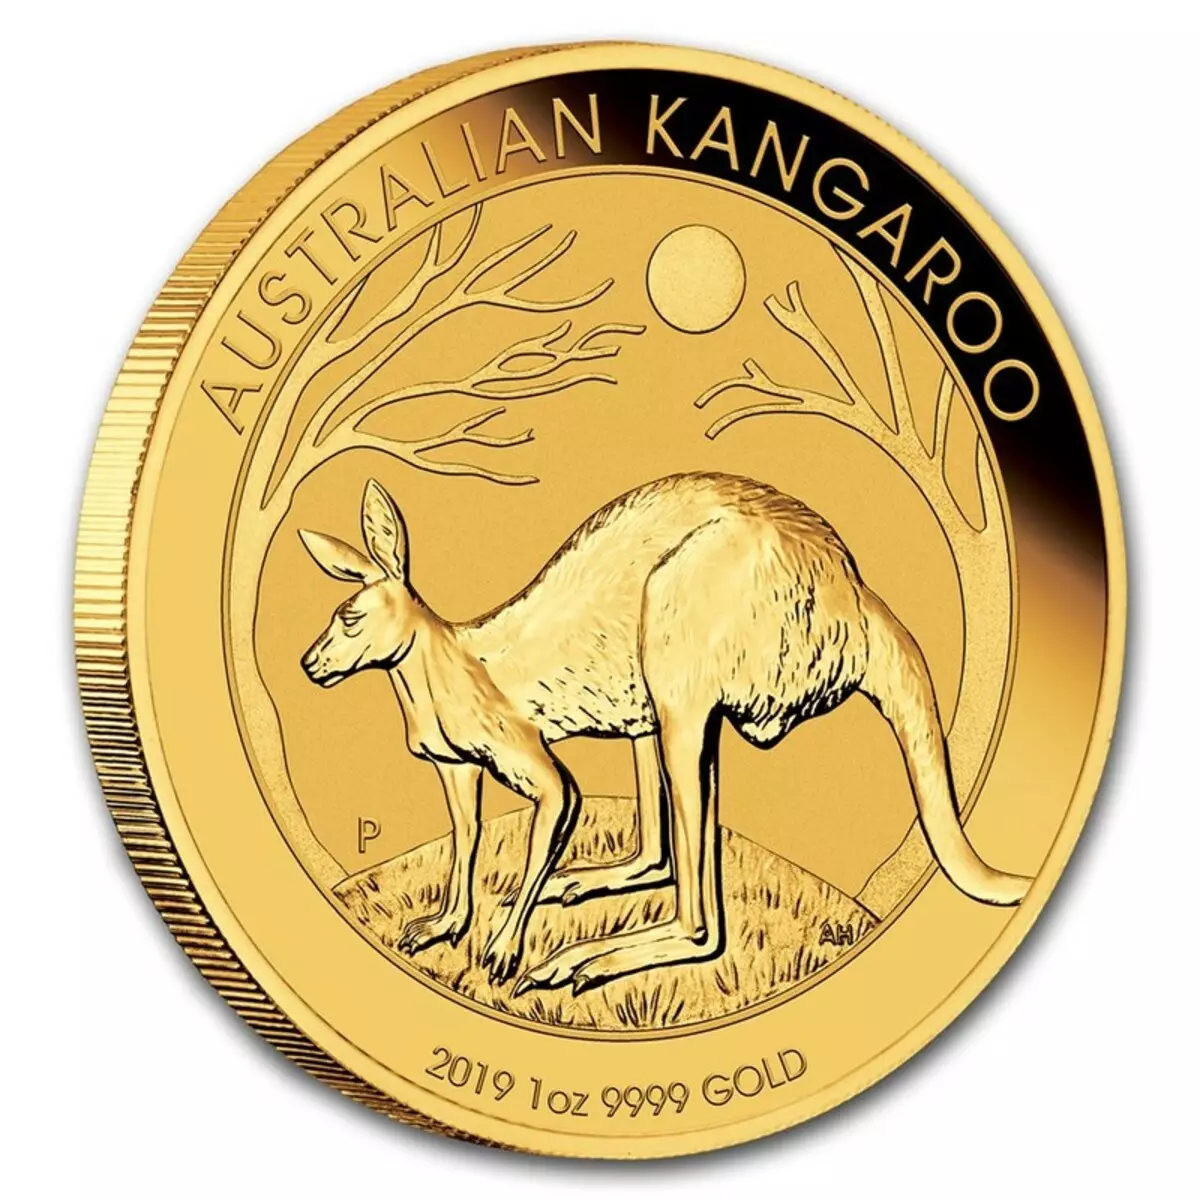 Χρυσό νόμισμα - ένα αξέχαστο δώρο και μια επένδυση: αρχαία και επένδυση, αναμνηστικά χρυσά νομίσματα 7676_19